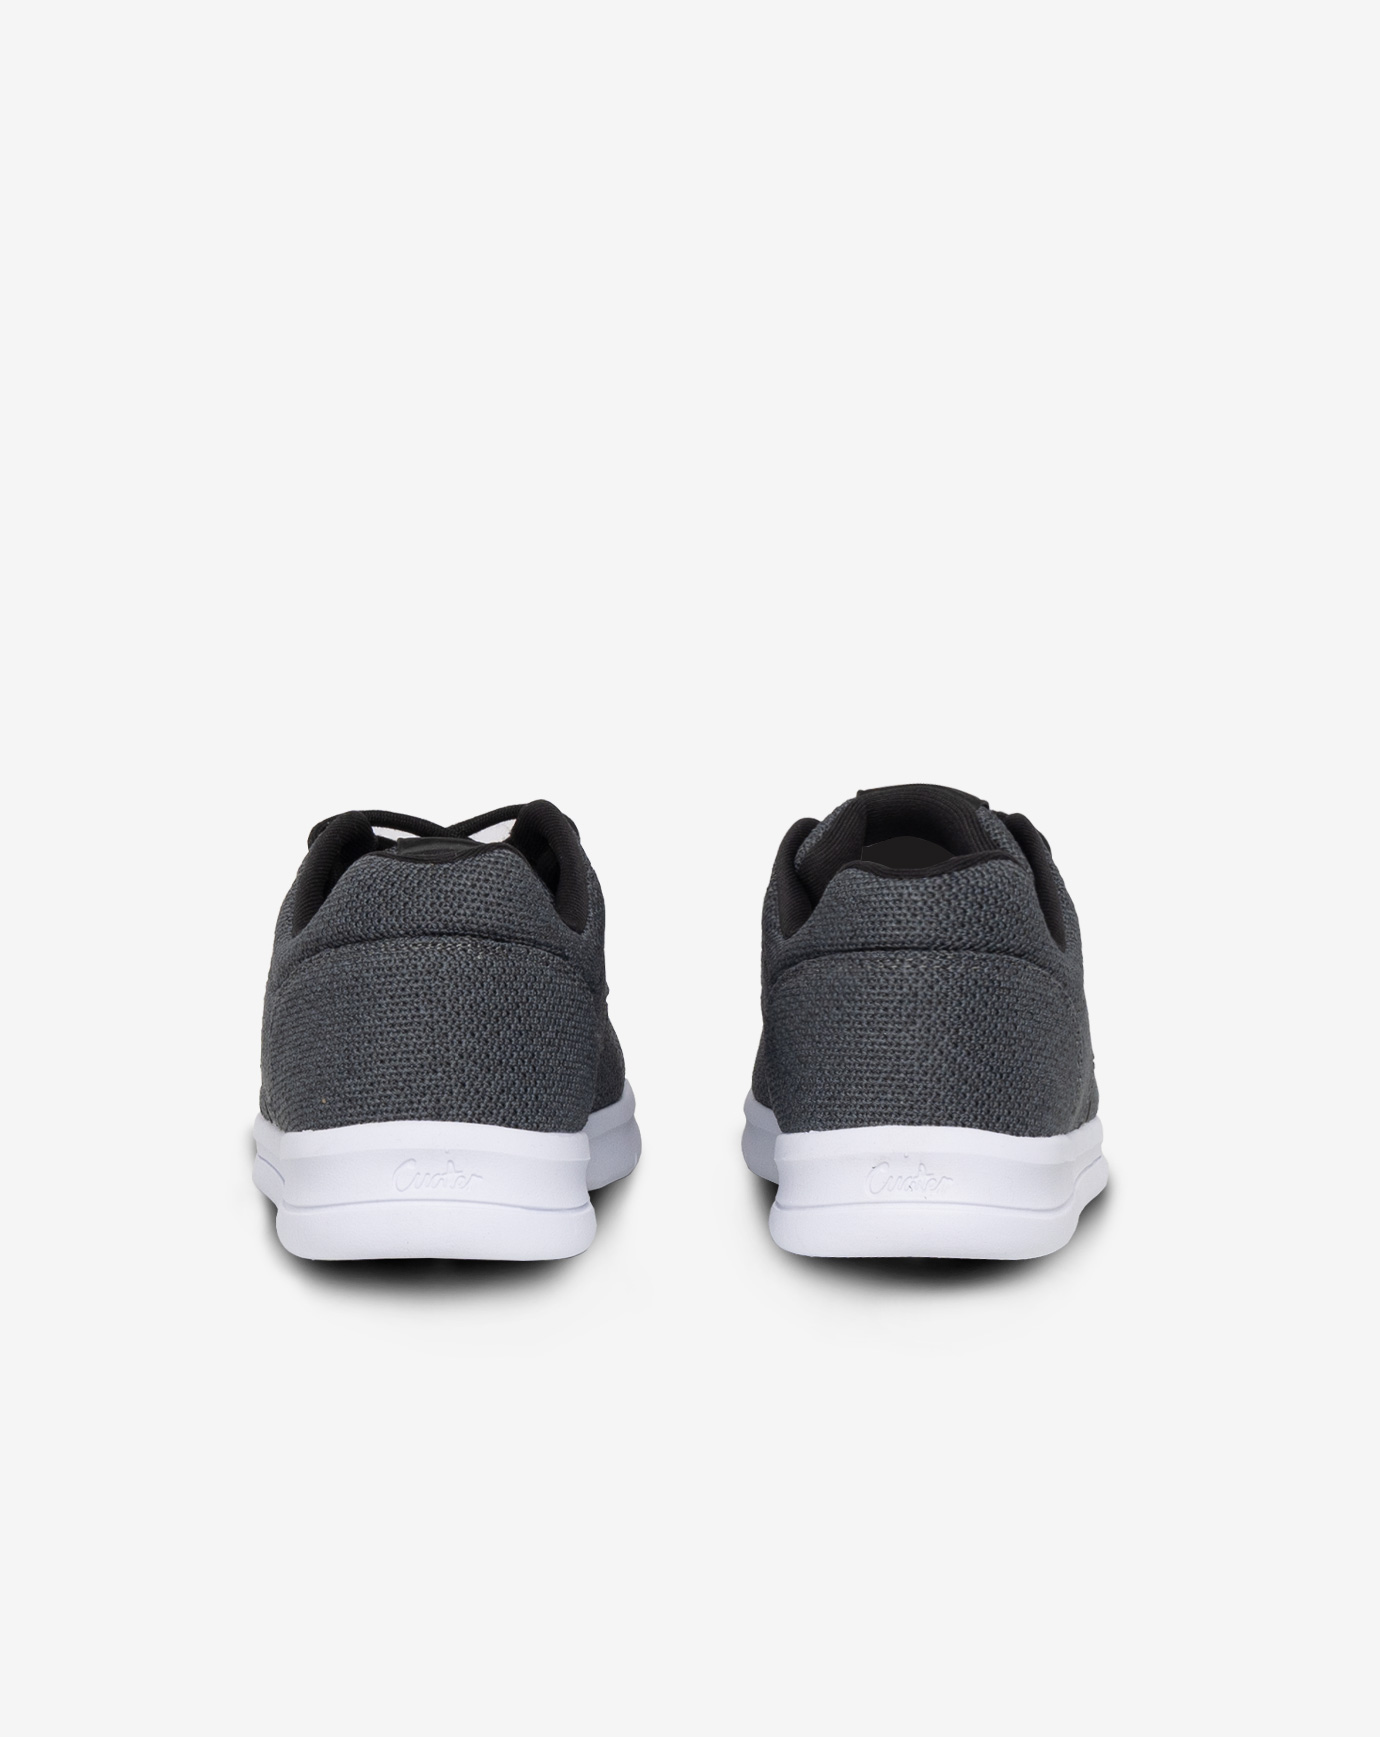 TravisMathew The Daily - Knit Men's Shoes Black/White : 10 M